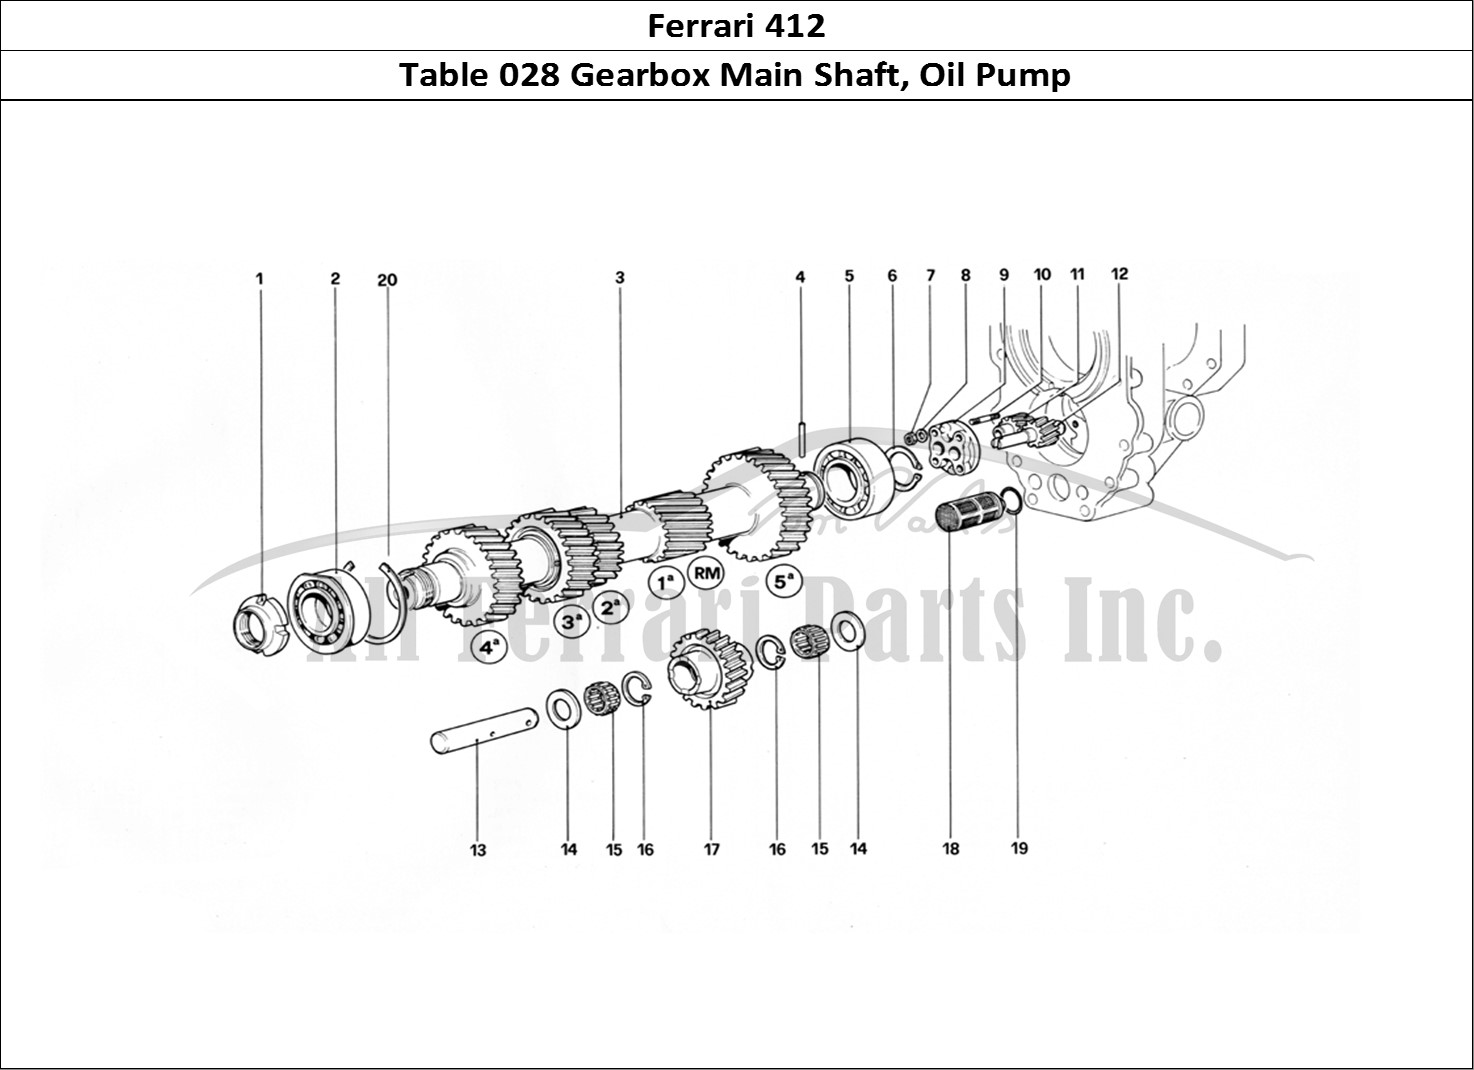 Ferrari Parts Ferrari 412 (Mechanical) Page 028 Main Shaft and Oil Pump -